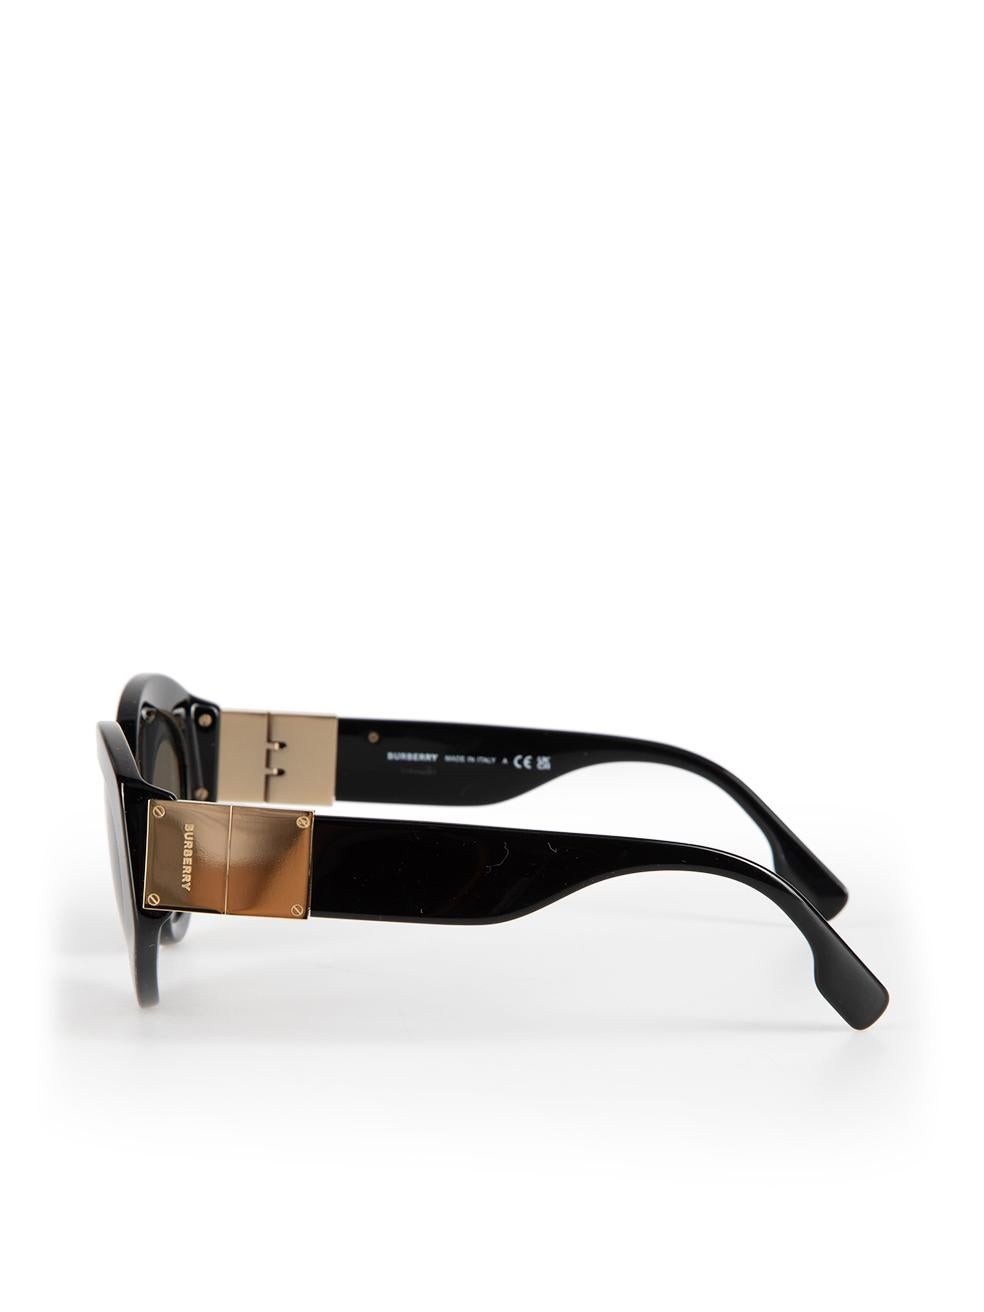 Burberry Black Cat Eye Sophia Sunglasses For Sale 1